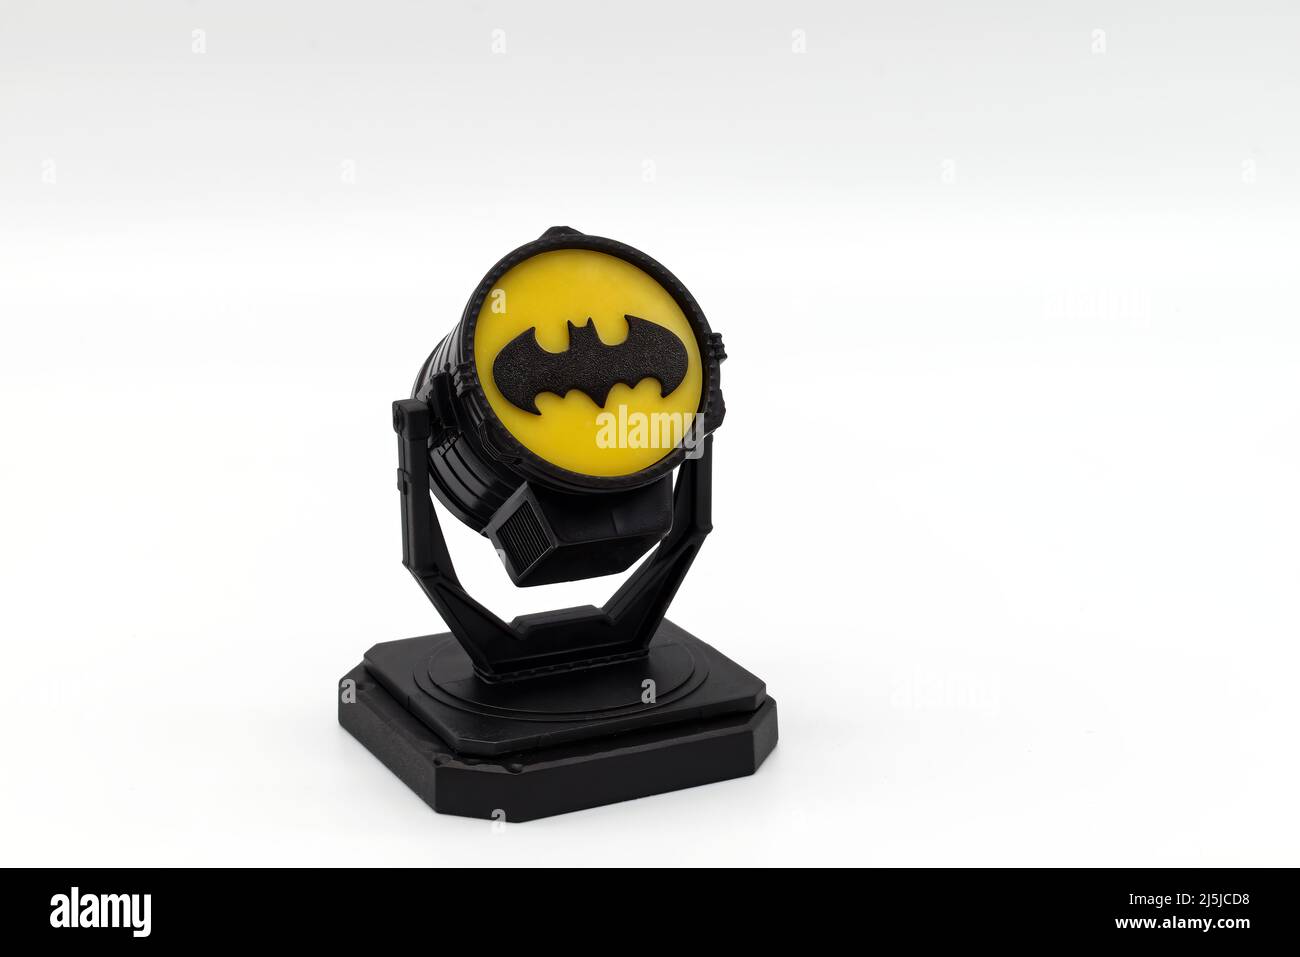 14 Batman Bat Signal Projector